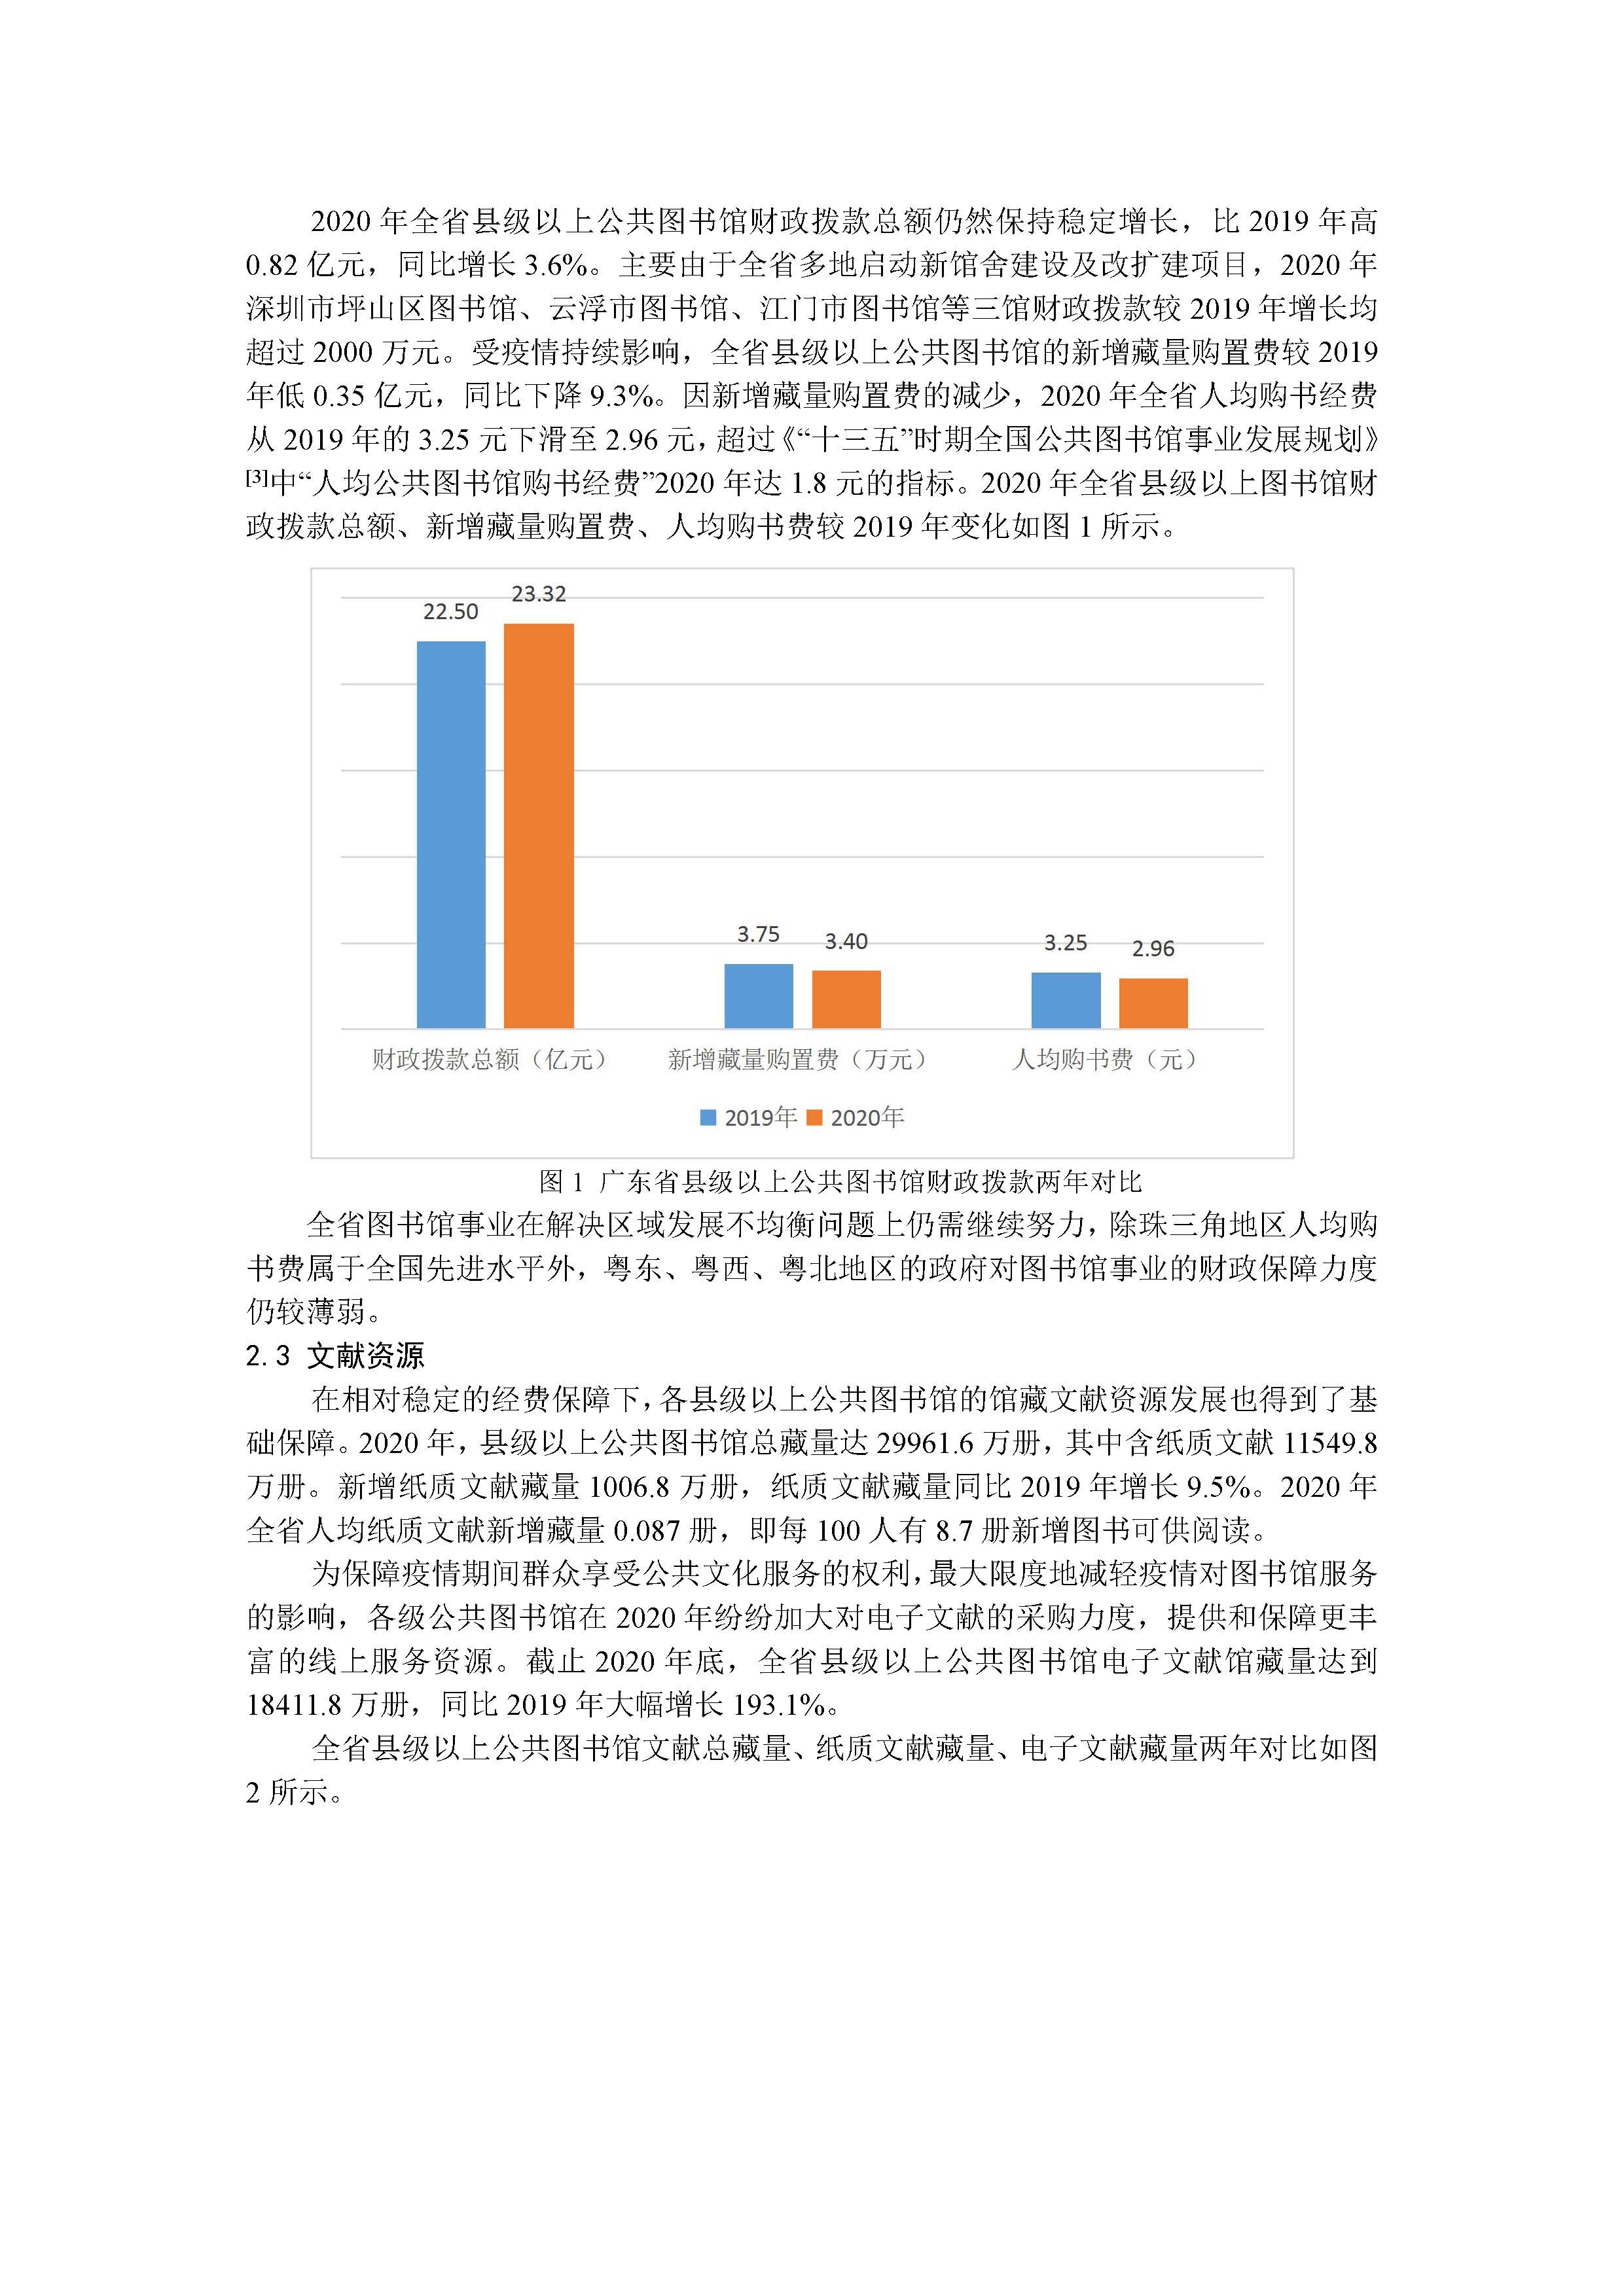 2020年广东省公共图书馆事业发展年度报告_页面_03.jpg